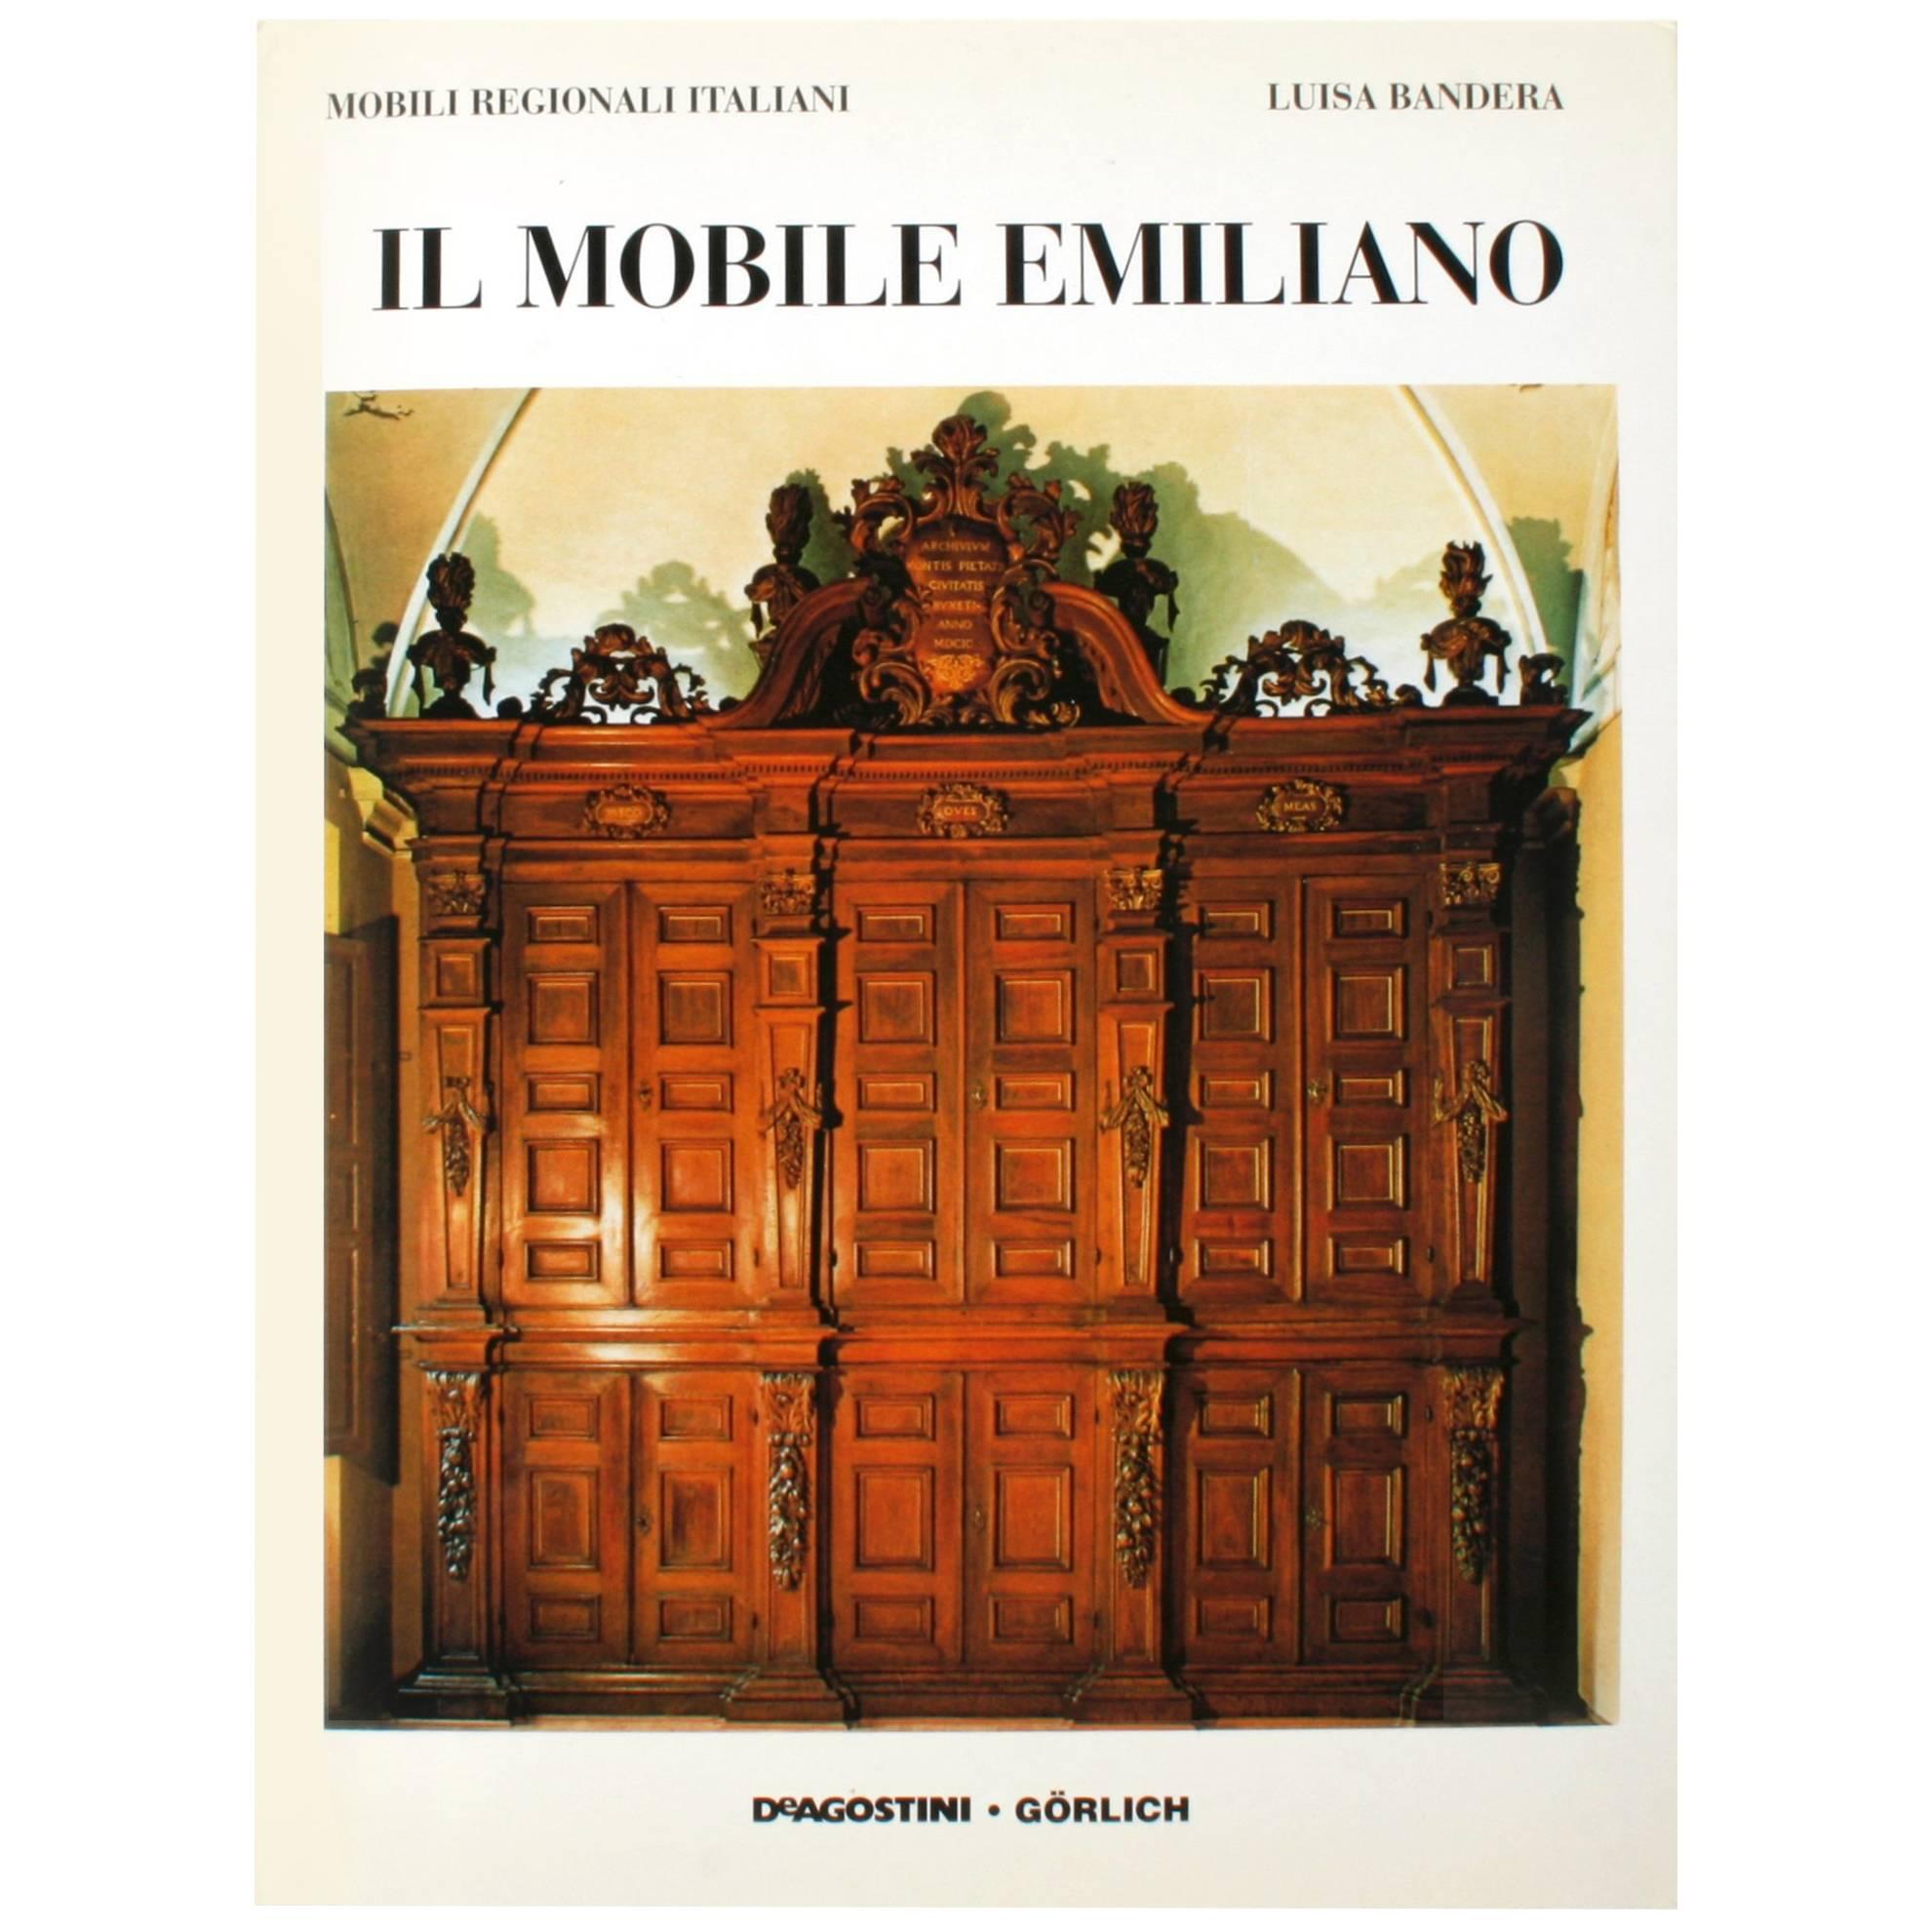 Livre « IL MOBILE EMILIANO » de Luisa Bandera